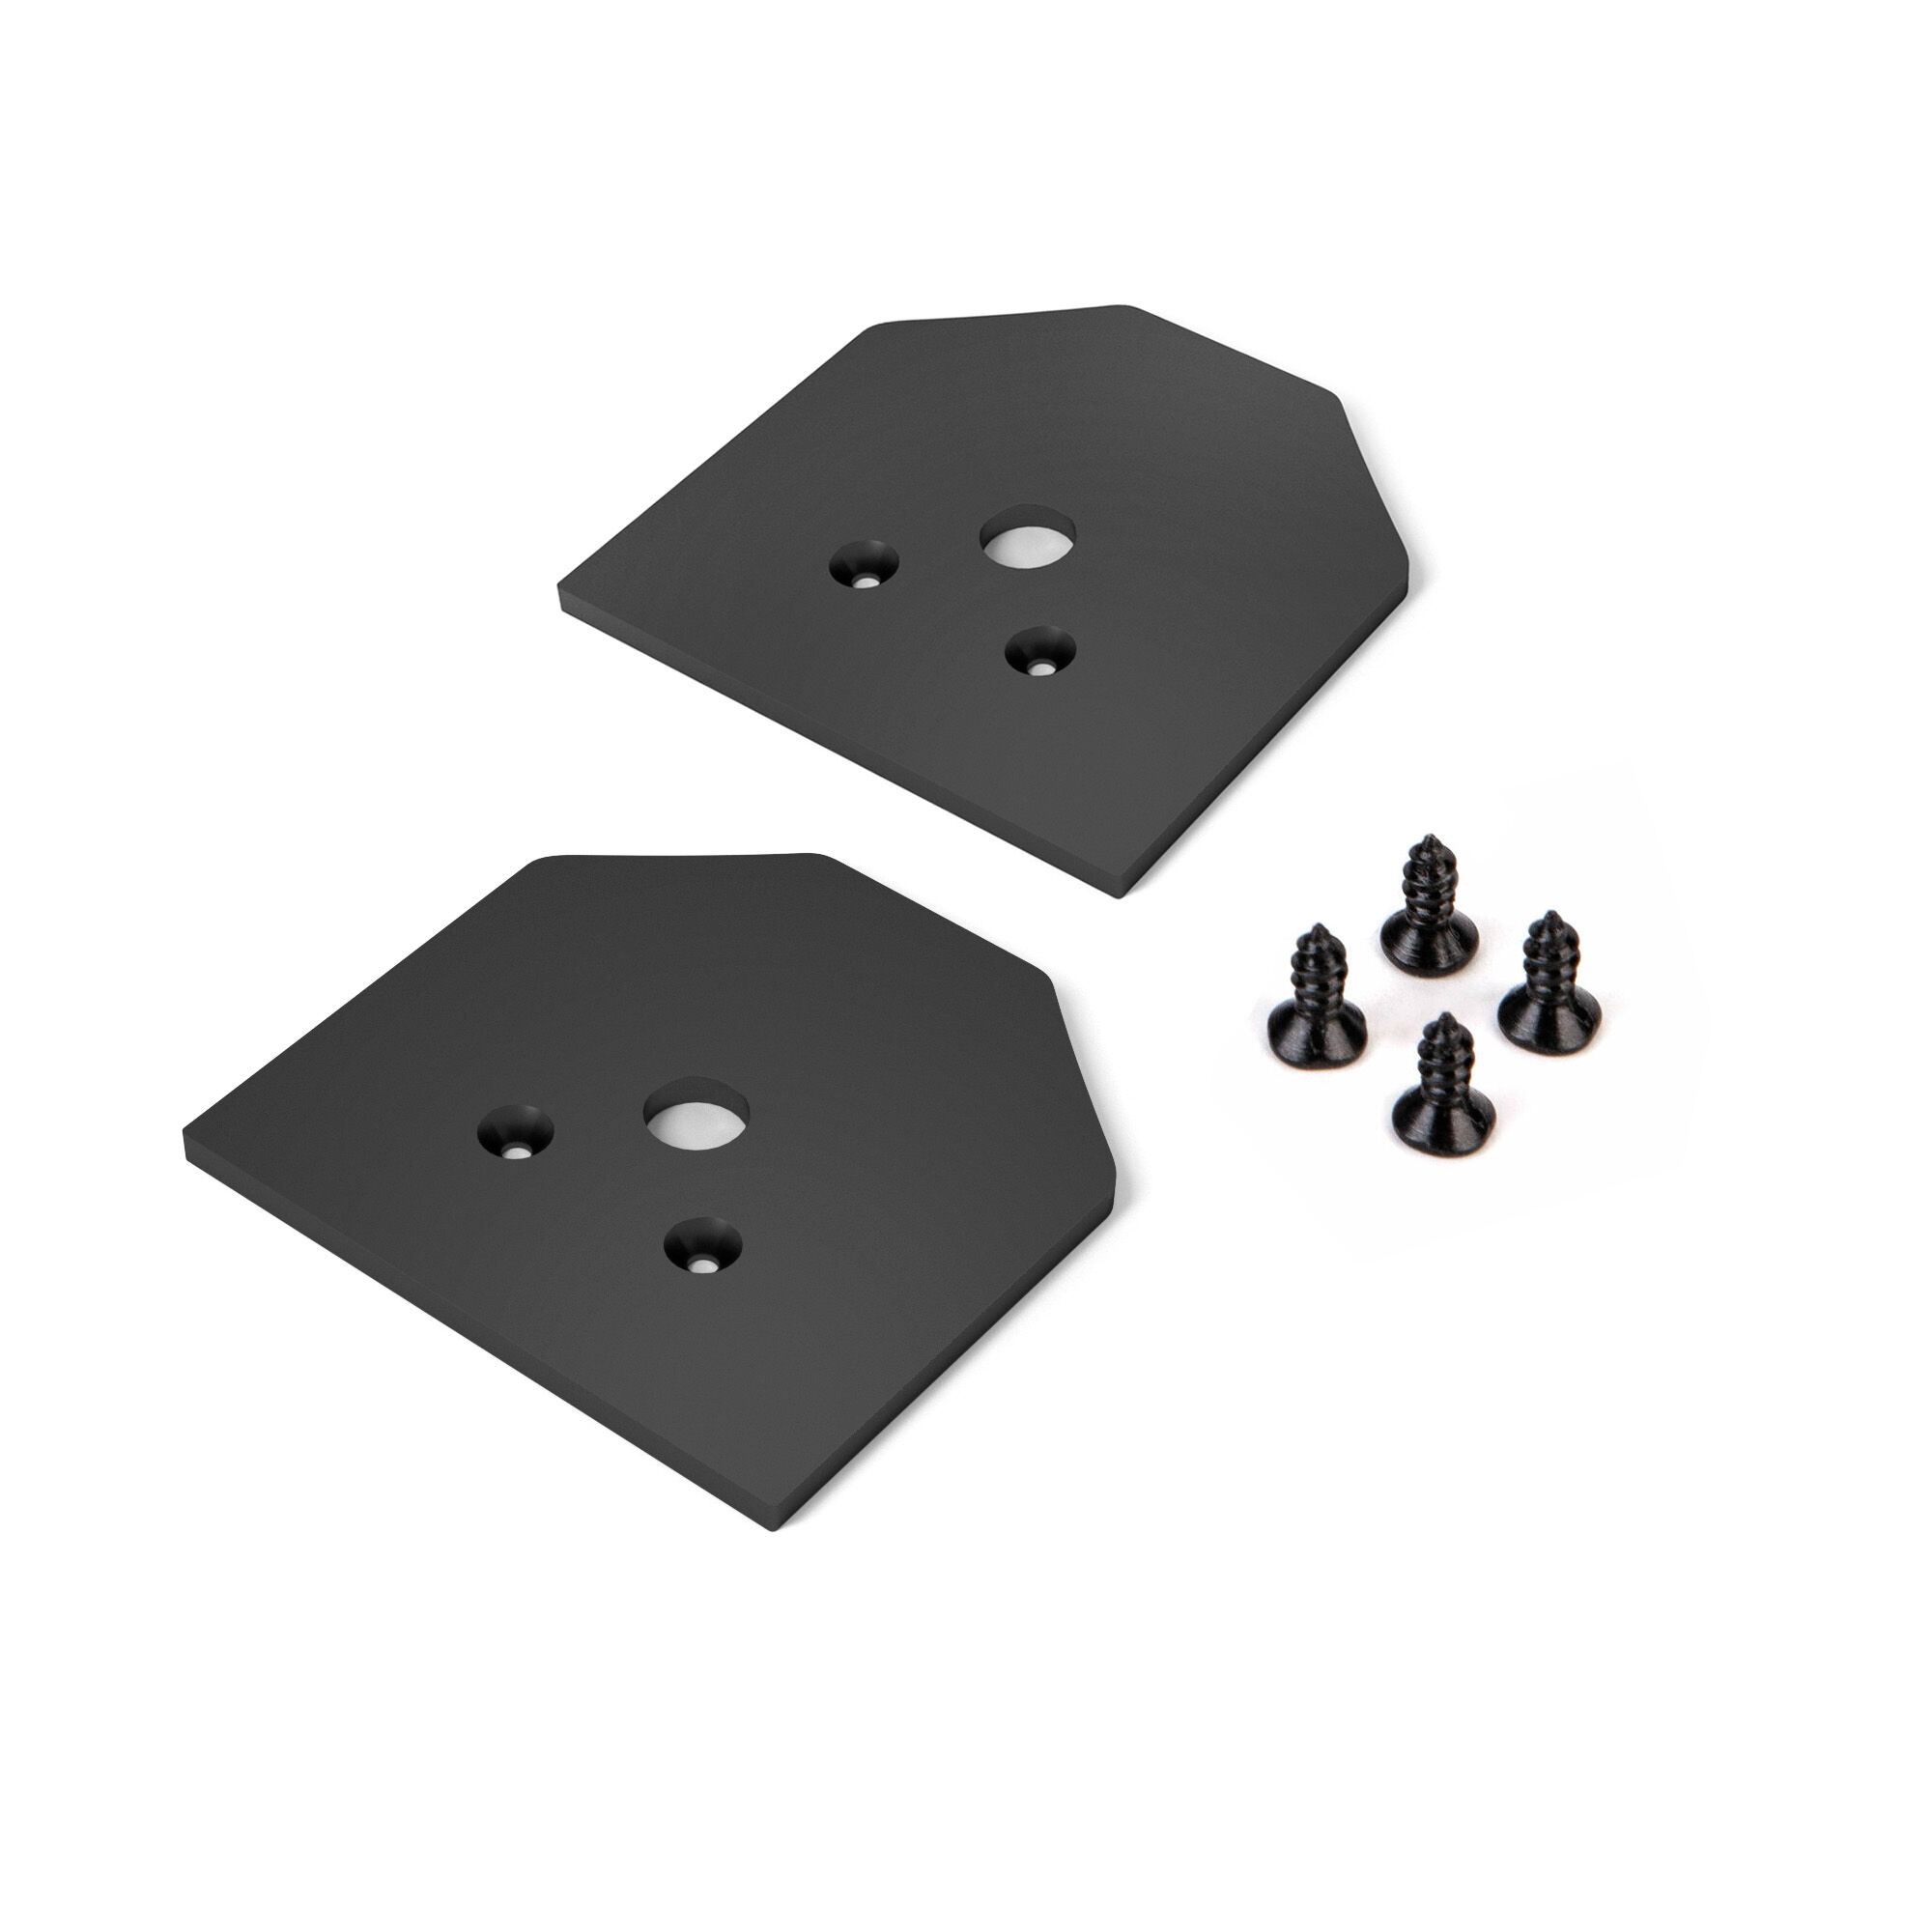 Slim Magnetic Заглушки для шинопровода в натяжной потолок (черный)  (2 шт.) 85125/00 85125/00 Elektrostandard